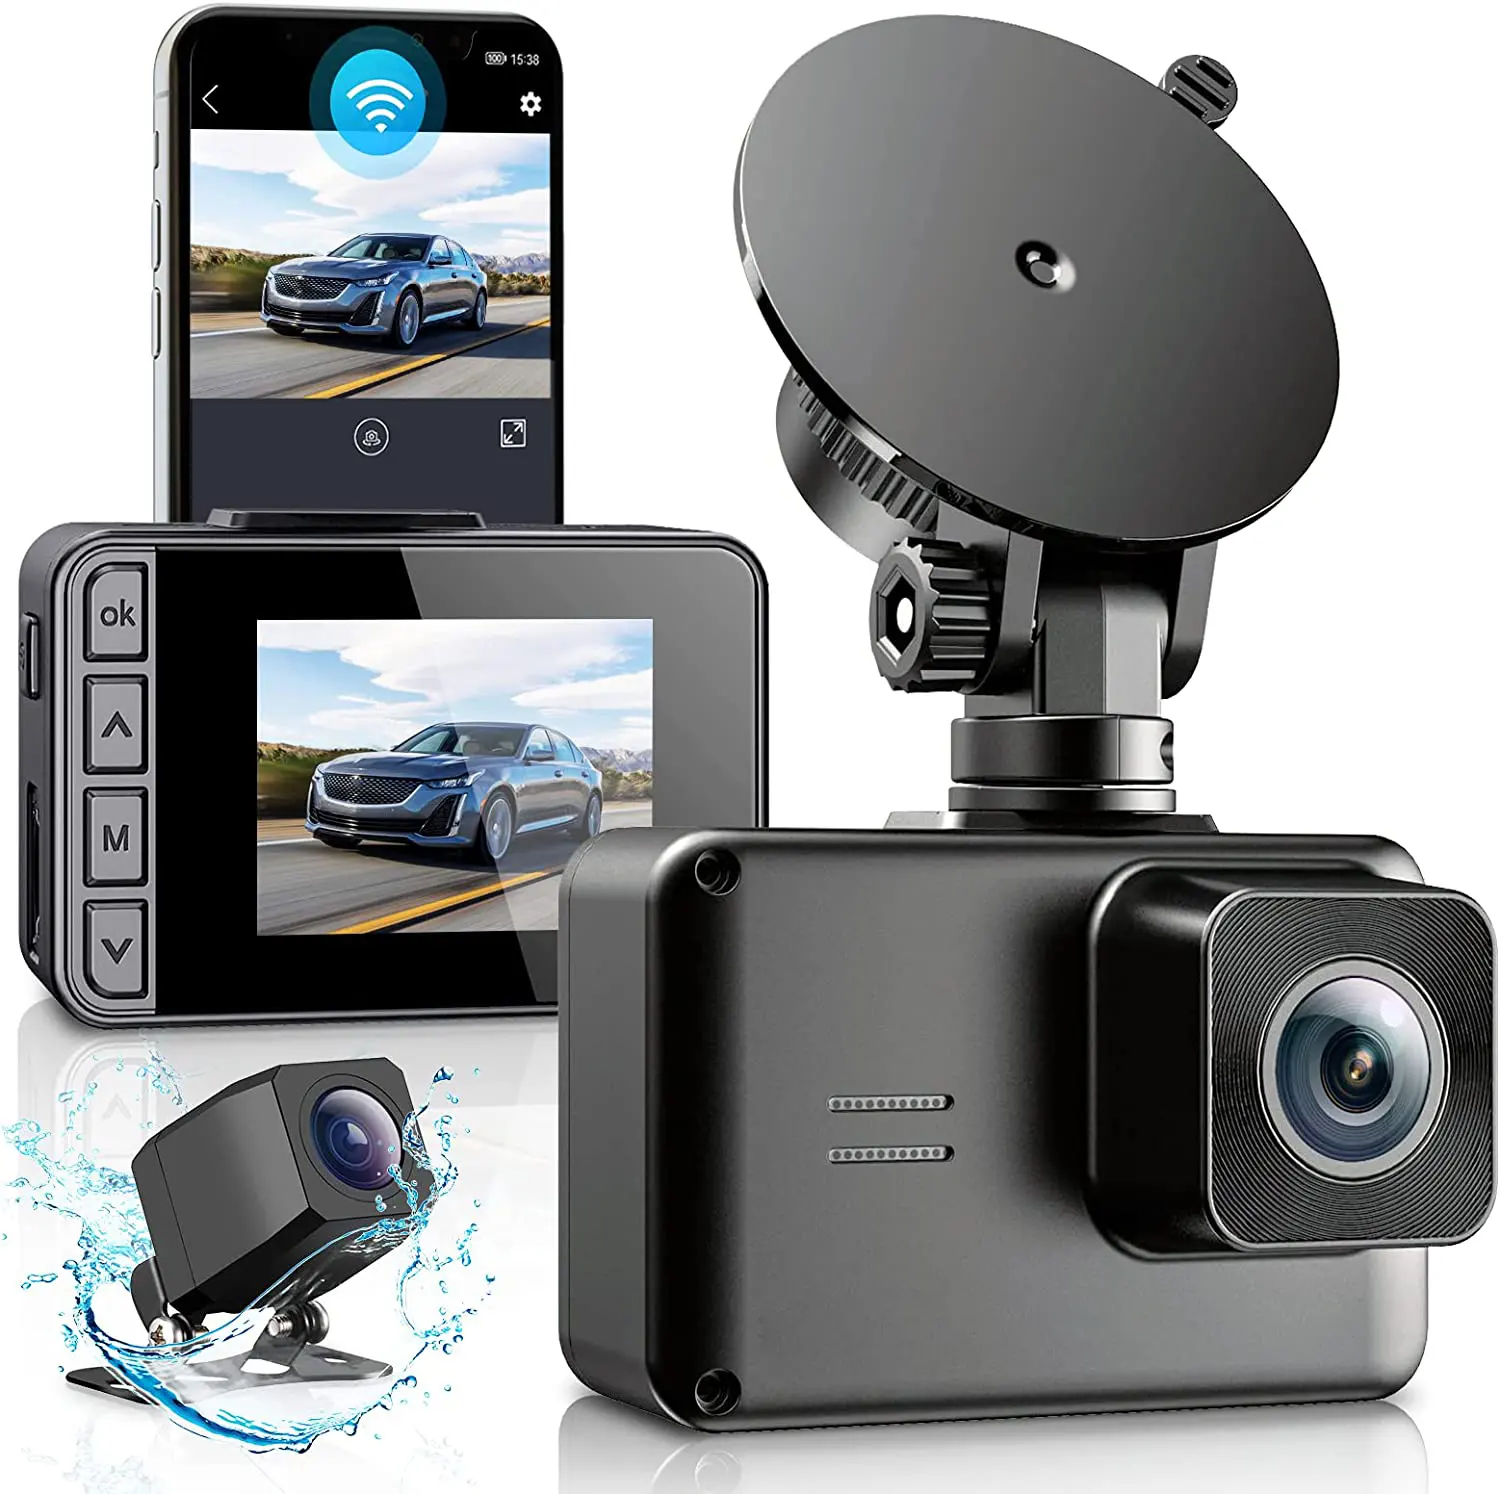 Caméra vidéo sans fil 2 pouces 2 objectifs voiture dvr 4K dashcam wifi gps nuage avant et arrière voiture boîte noire parking vision nocturne dash cam